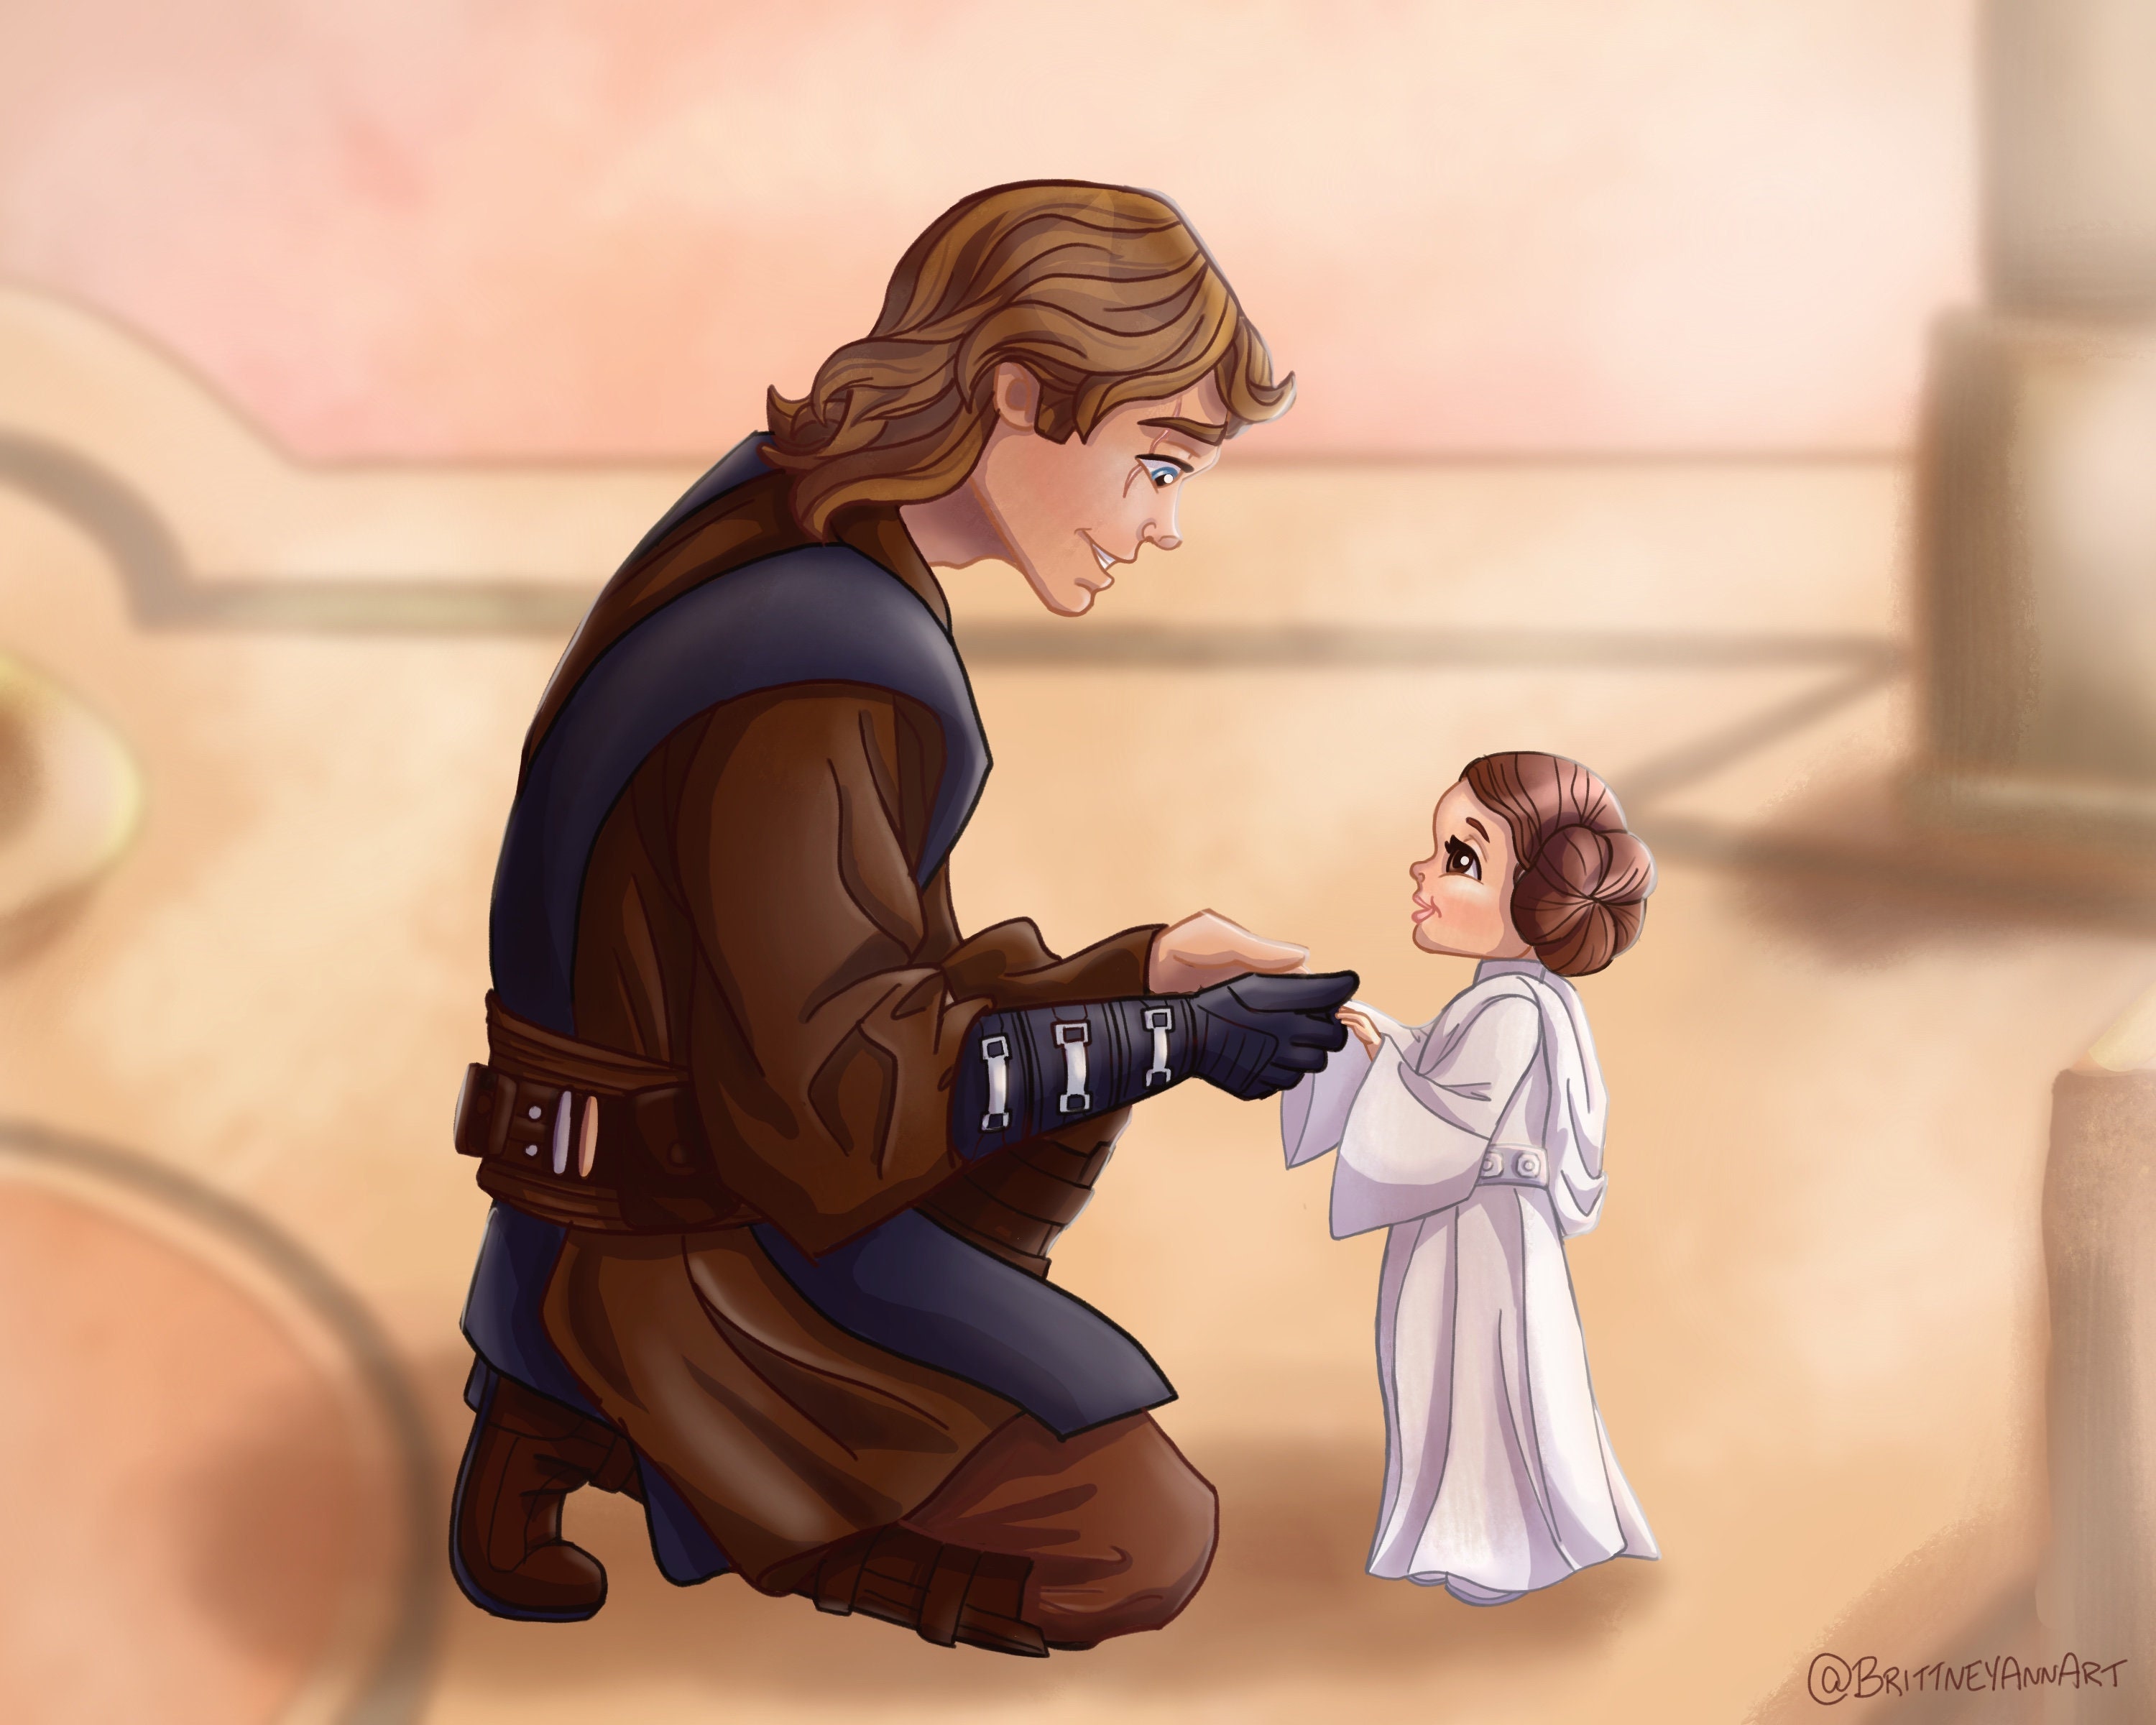 Star Wars Baby Princess Leia Anakin Skywalker Digital Painting Etsy